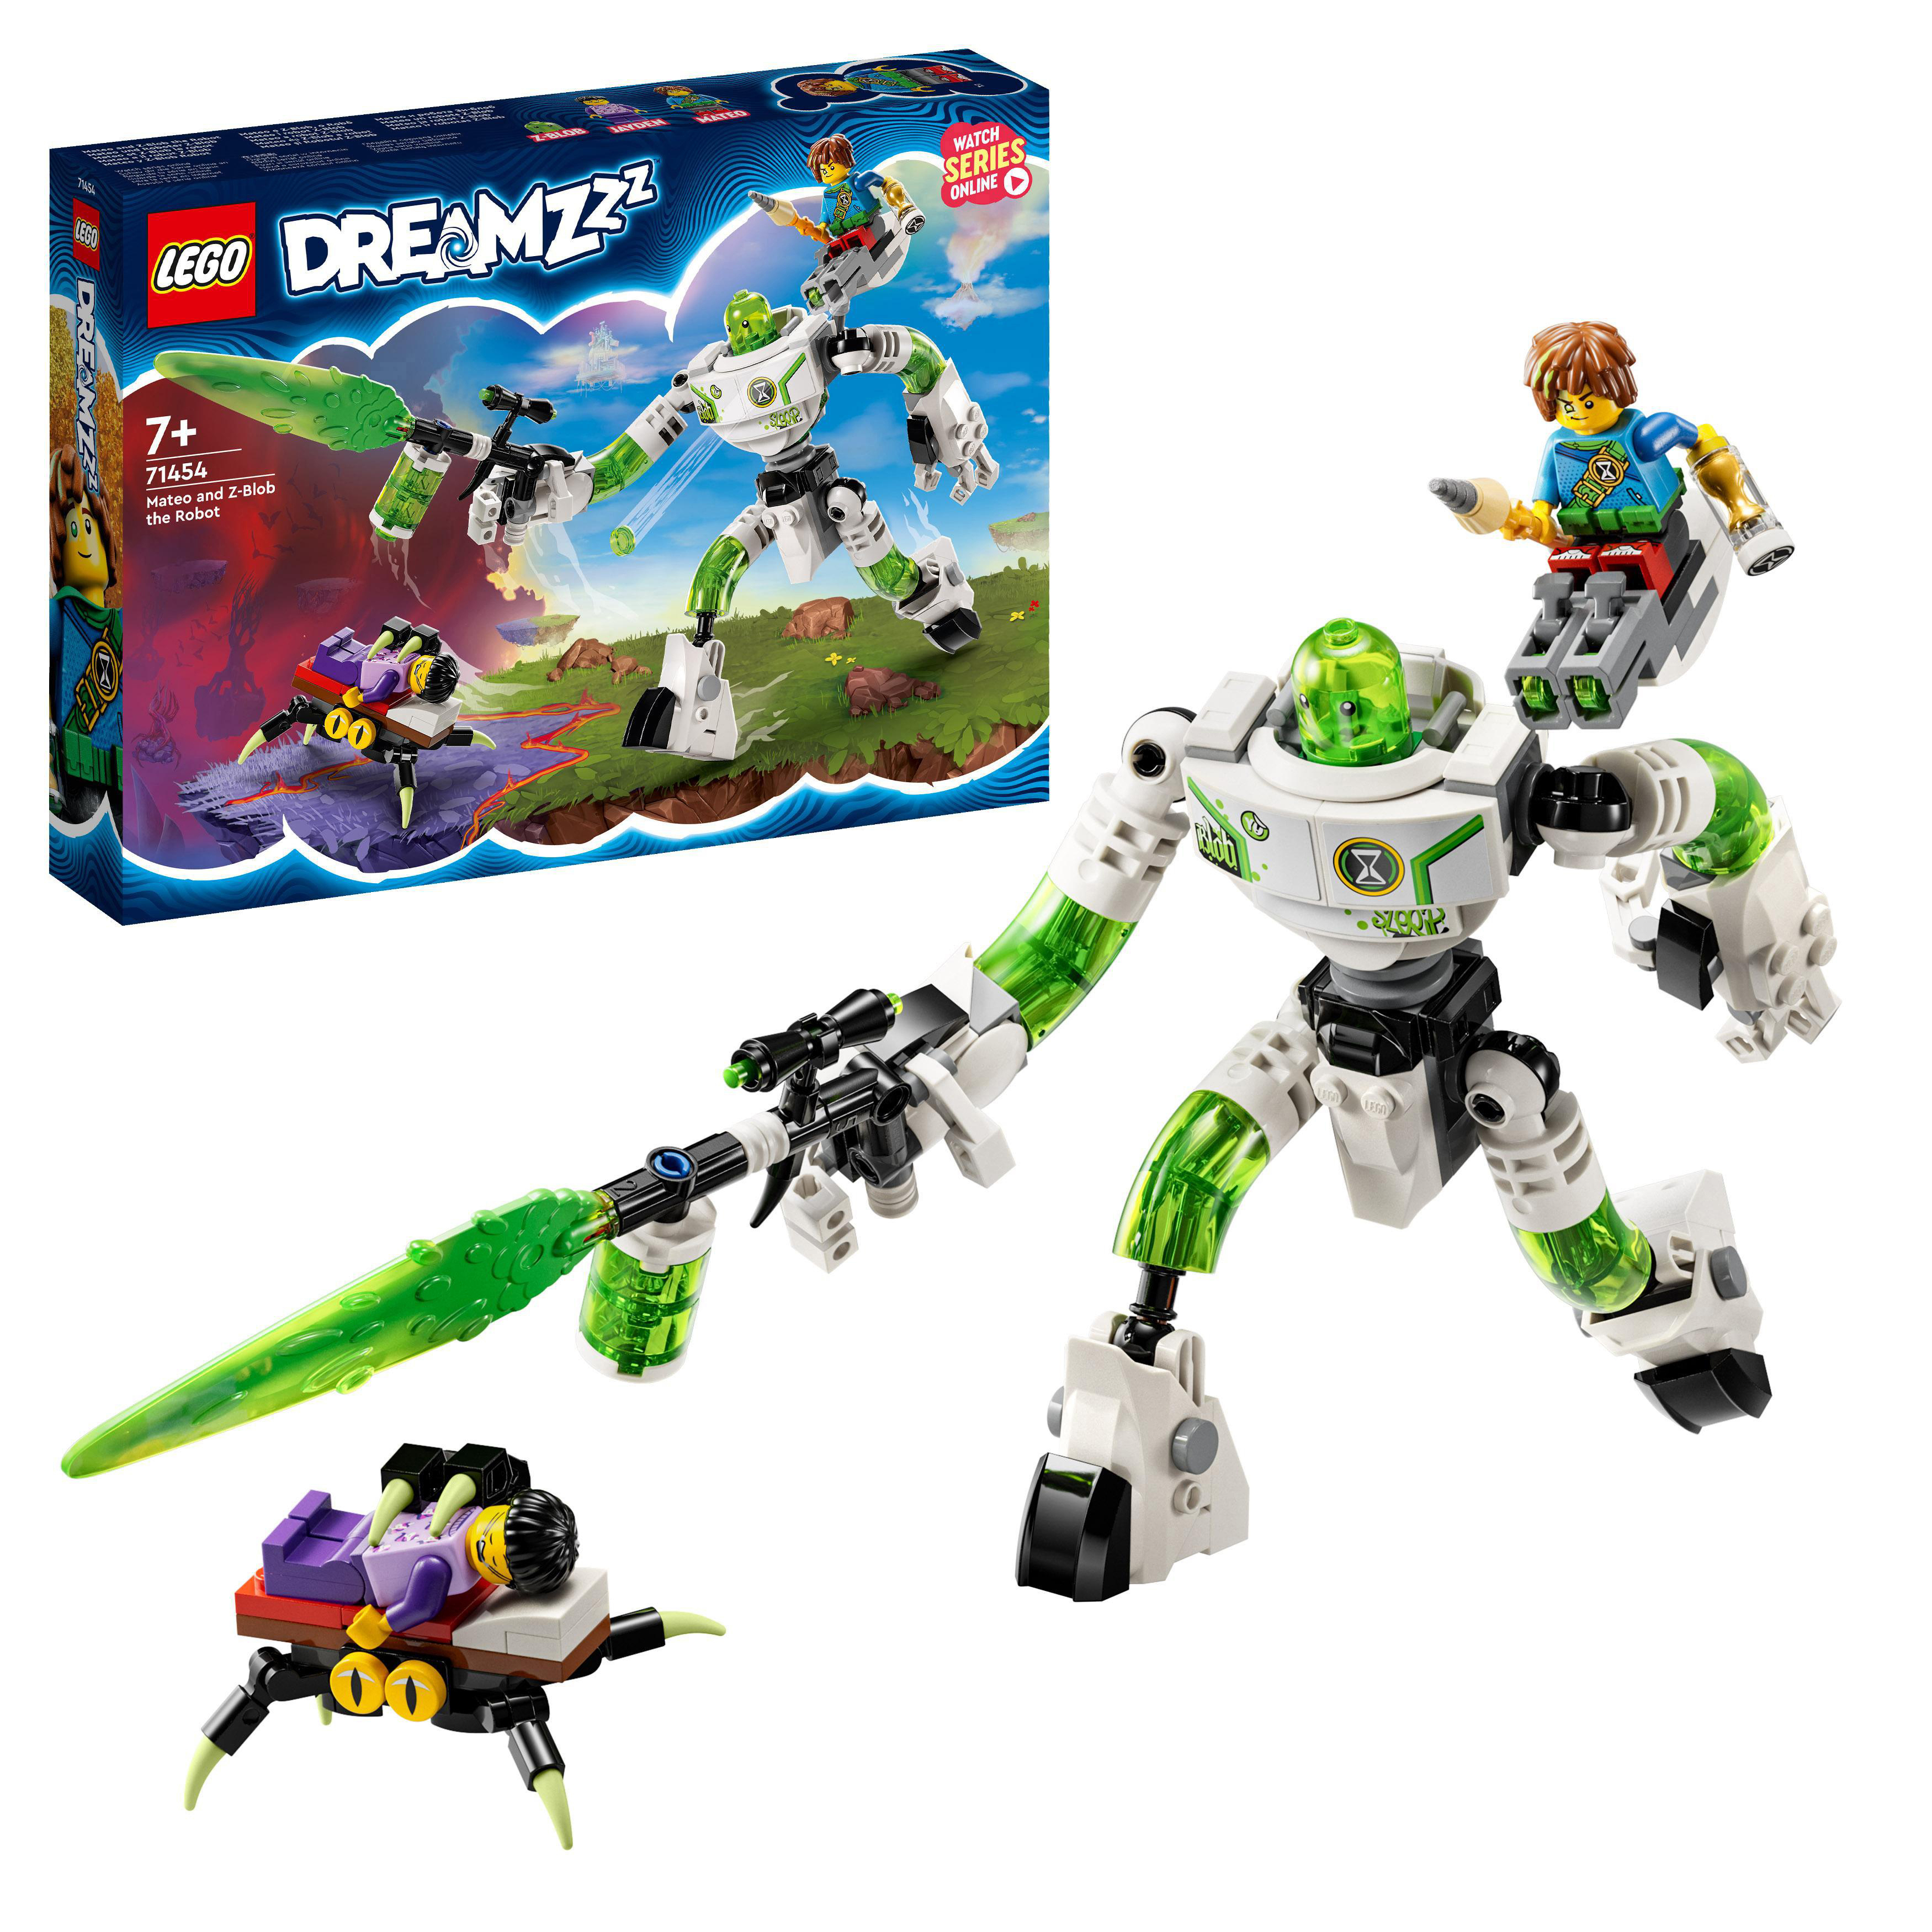 LEGO DREAMZzz und Bausatz, Z-Blob Mehrfarbig Roboter Mateo 71454